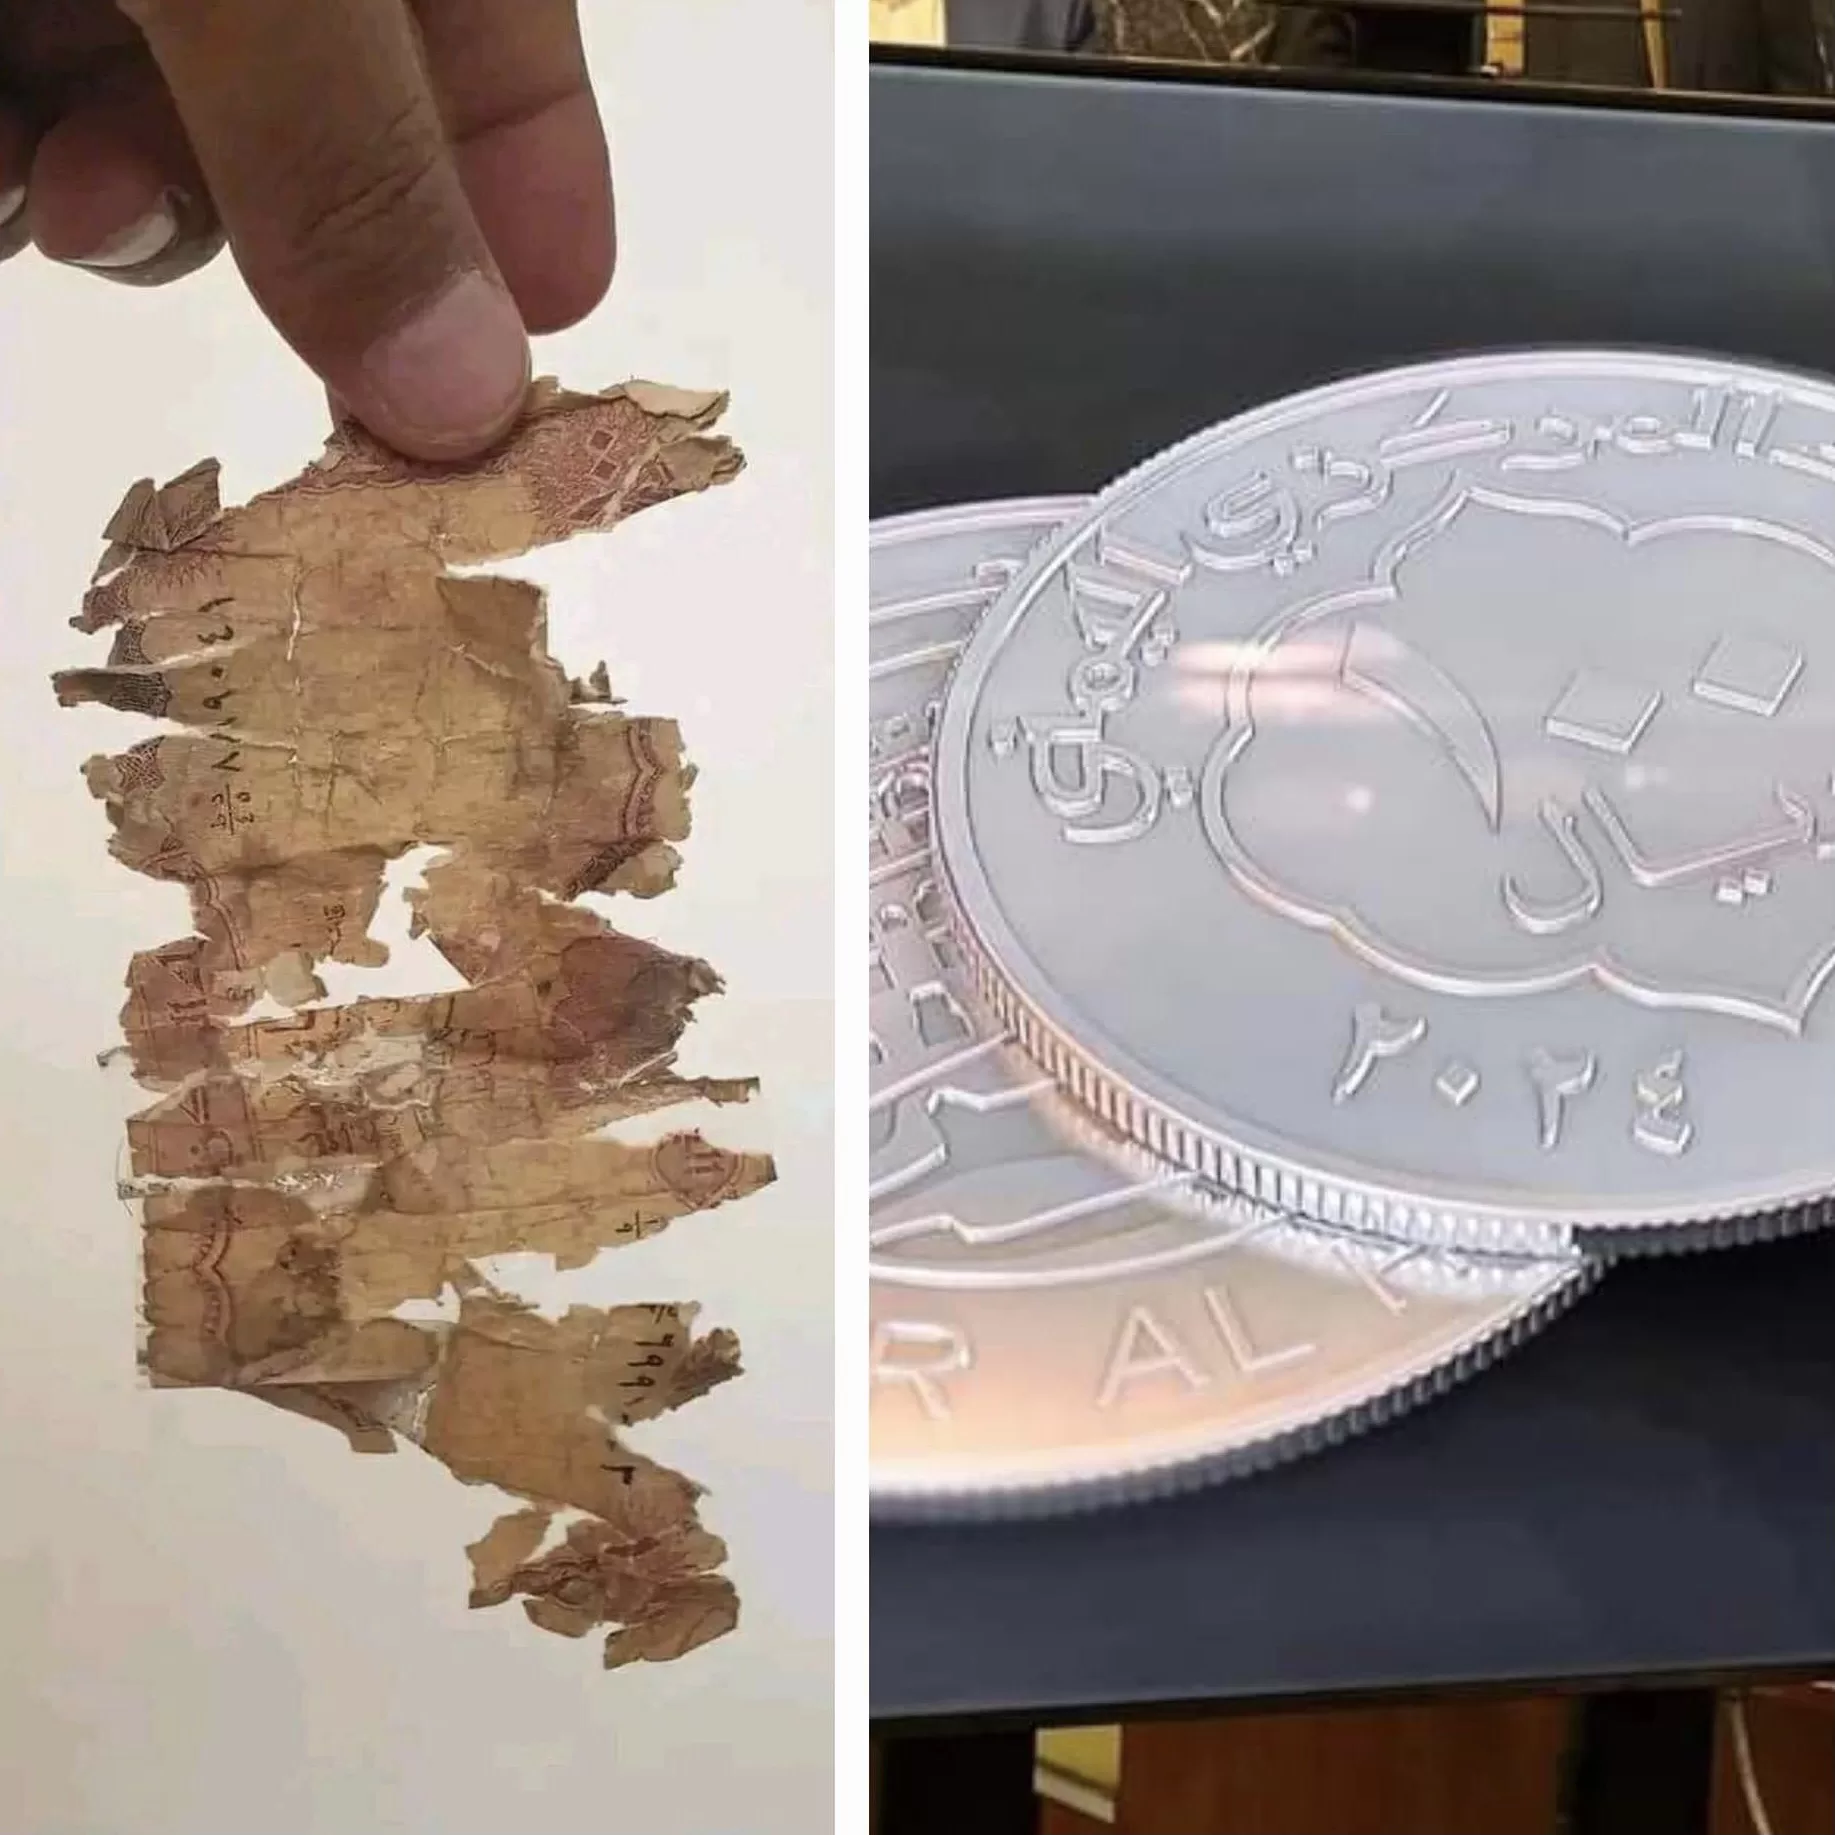 اليمن اليوم: خبير اقتصادي يشيد بإصدار عملة معدنية مؤقتة ويصفه بالإنجاز الاقتصادي